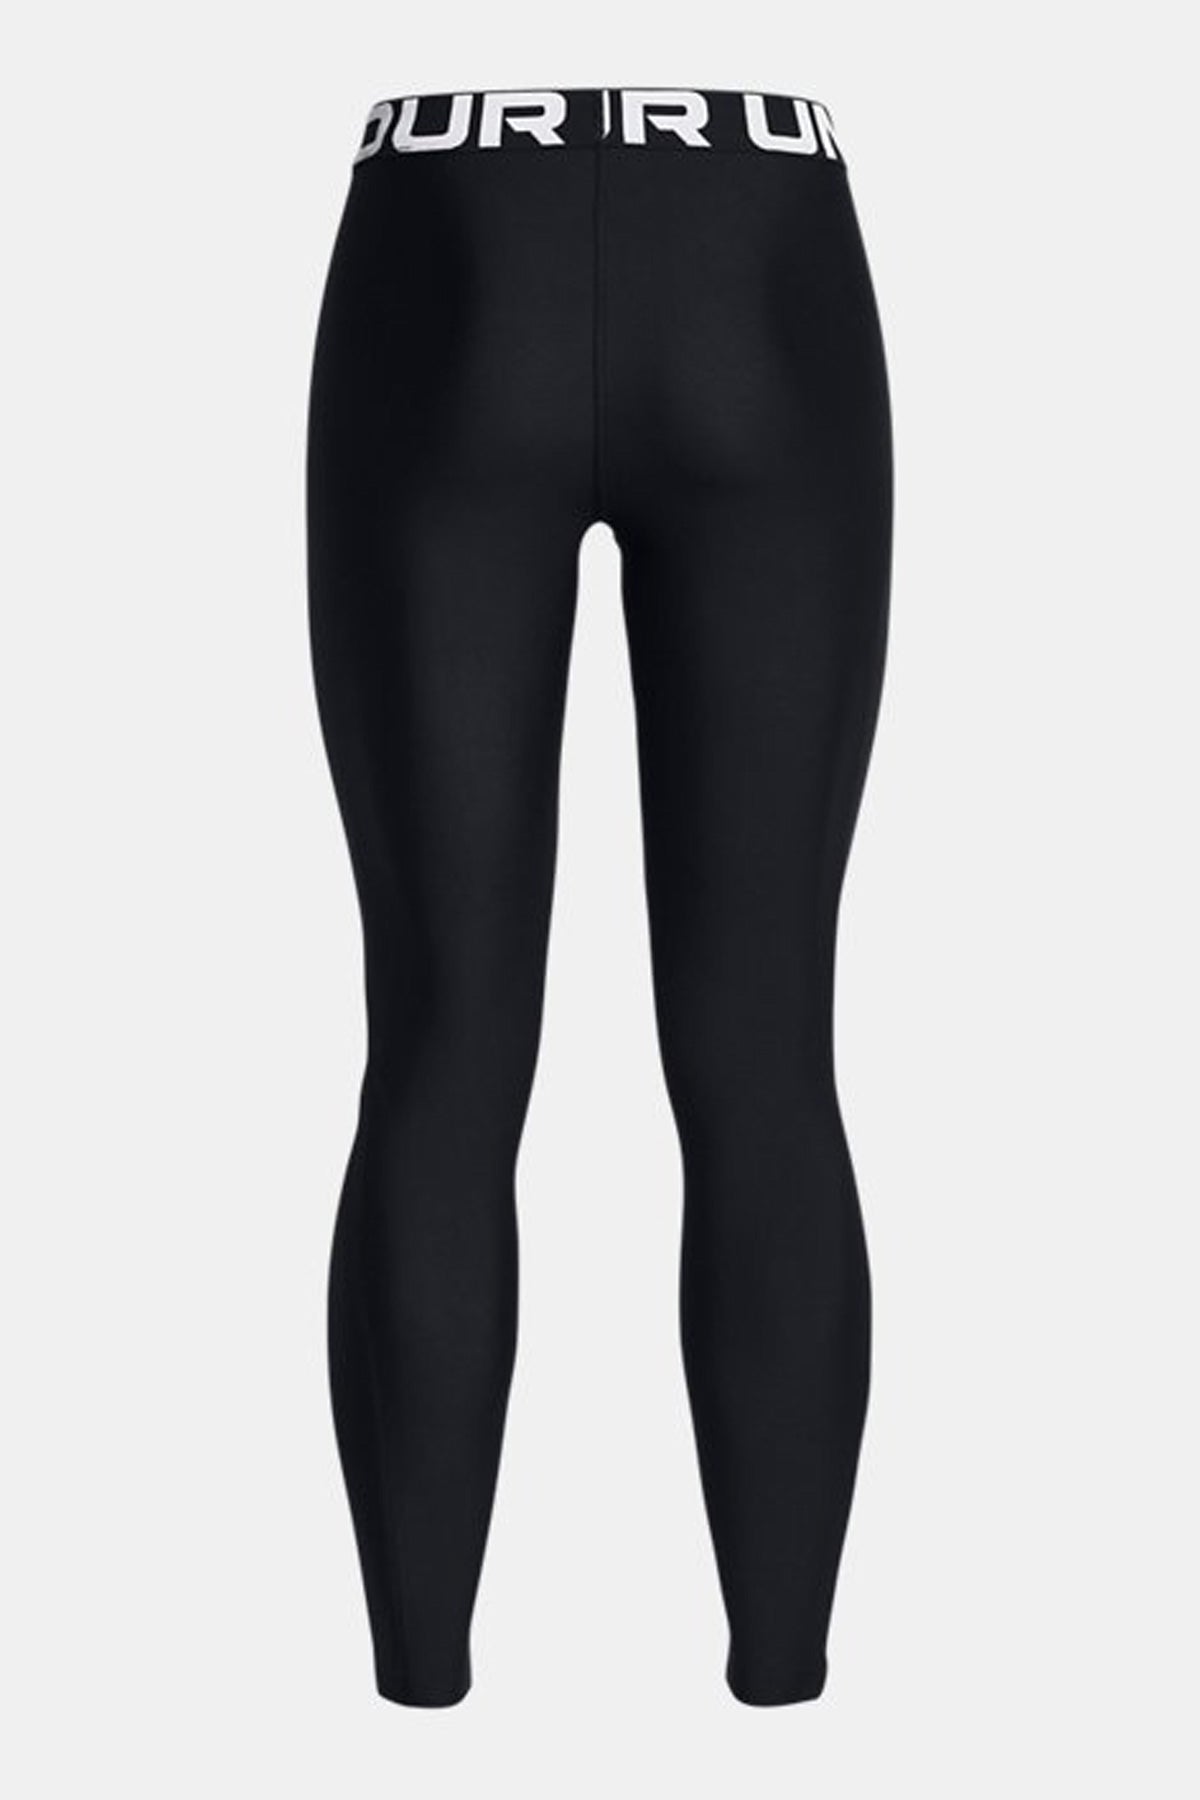 אנדר ארמור טייץ אימונים HeatGear® Leggings בצבע שחור מבריק לנשים-Under Armour-XS-נאקו